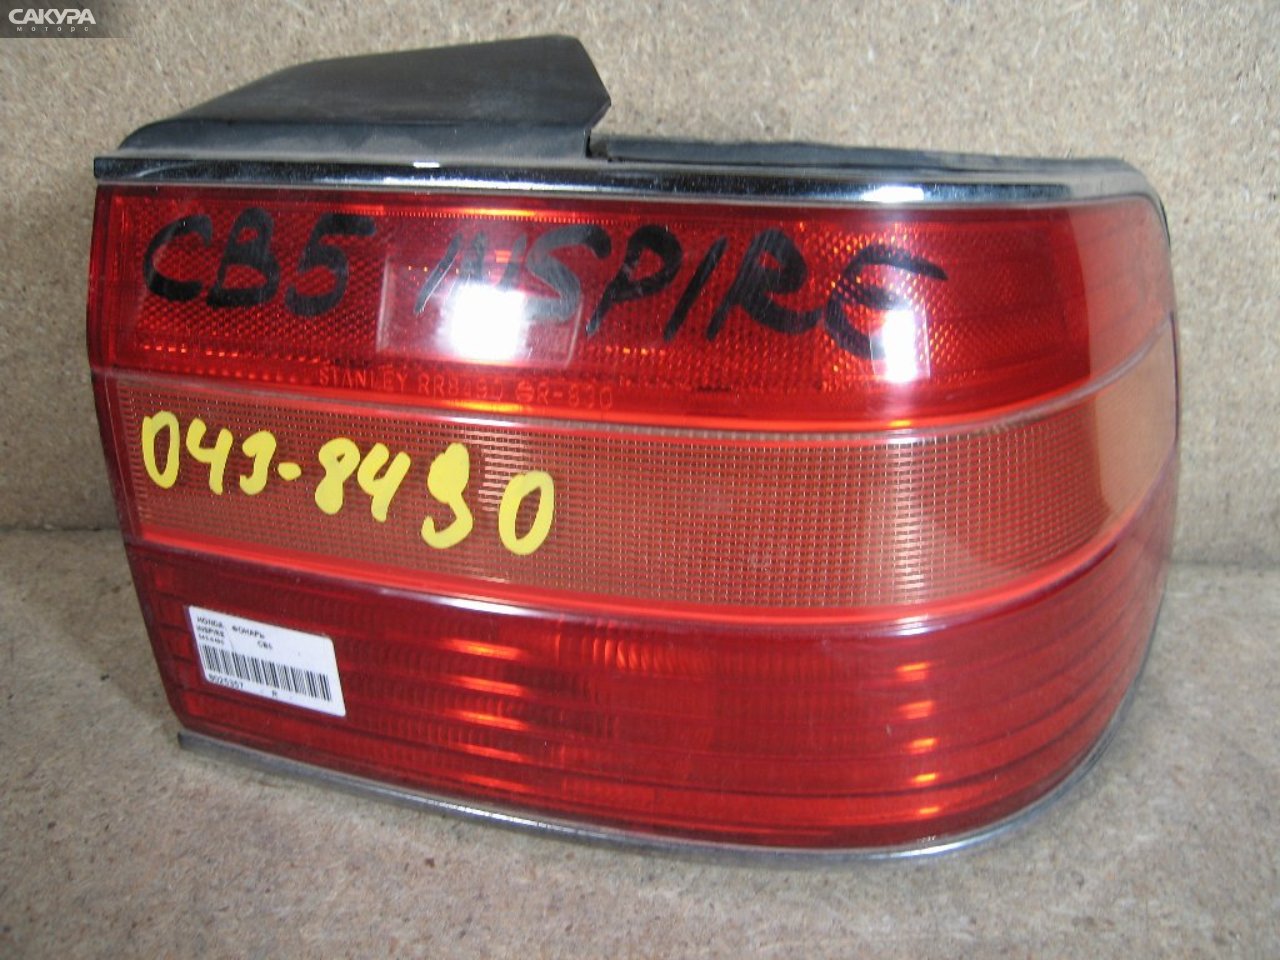 Фонарь стоп-сигнала правый Honda Inspire CB5 043-8490: купить в Сакура Абакан.